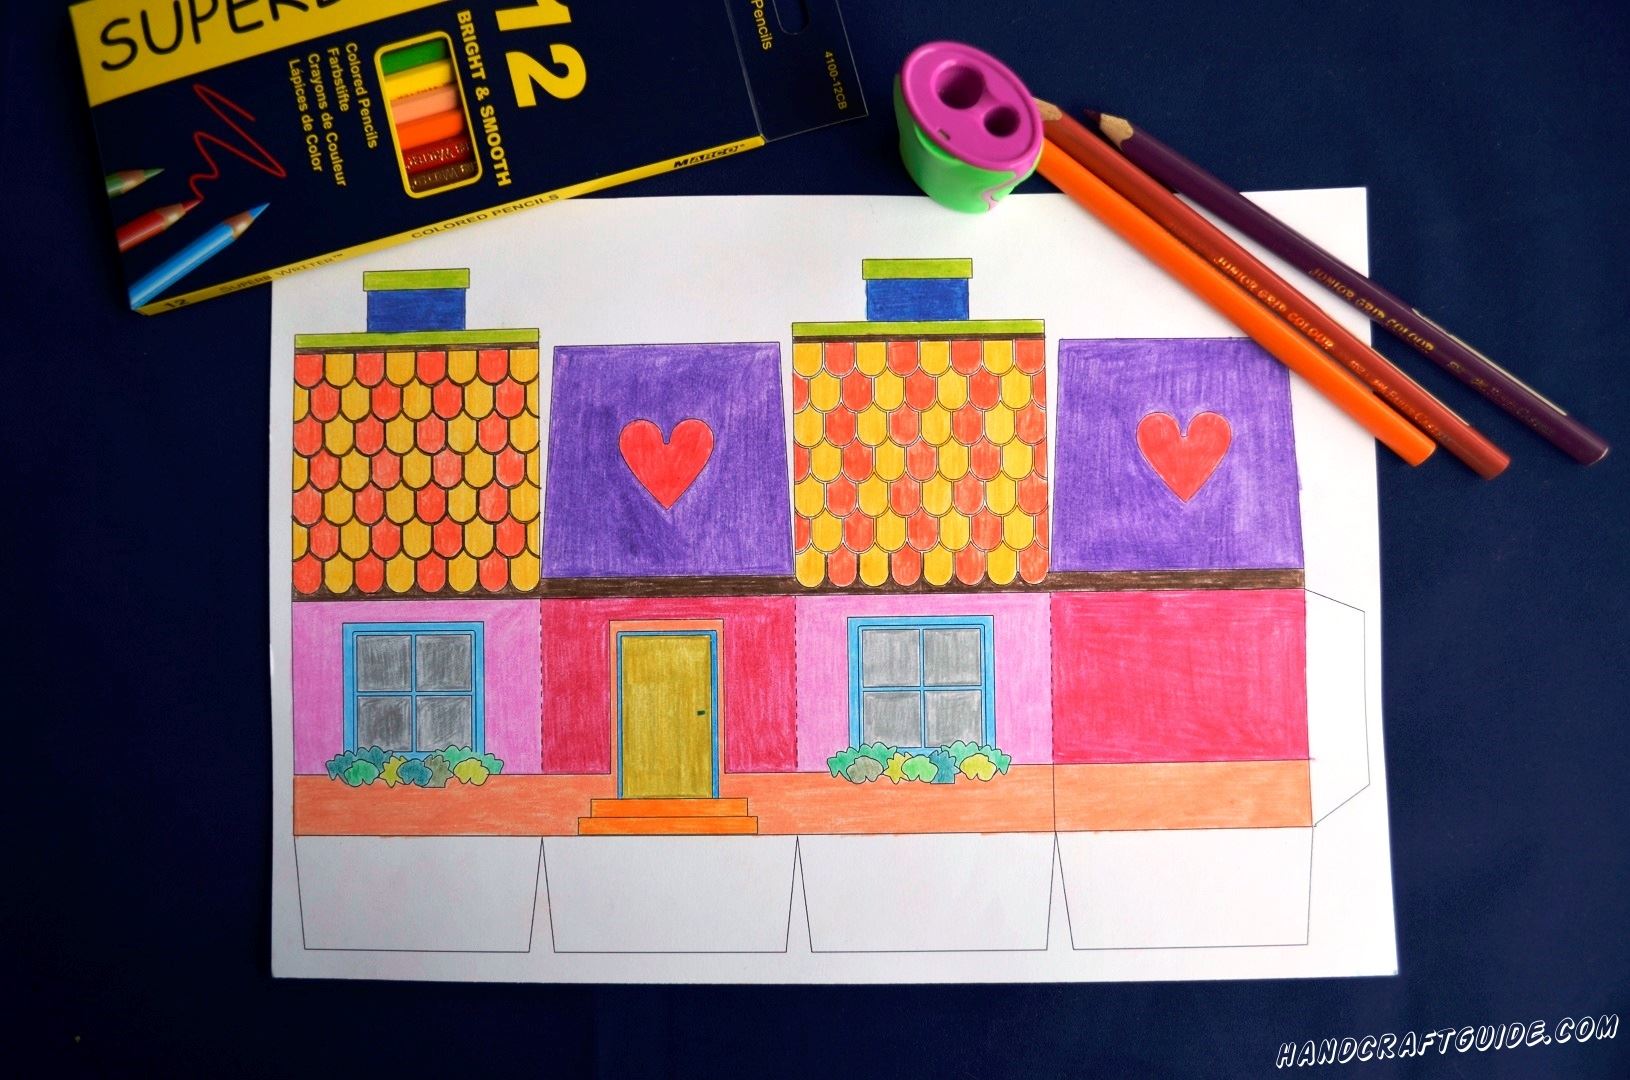 Здесь нарисованы 4 стеночки нашего домика, давайте разрисуем их яркими карандашами.